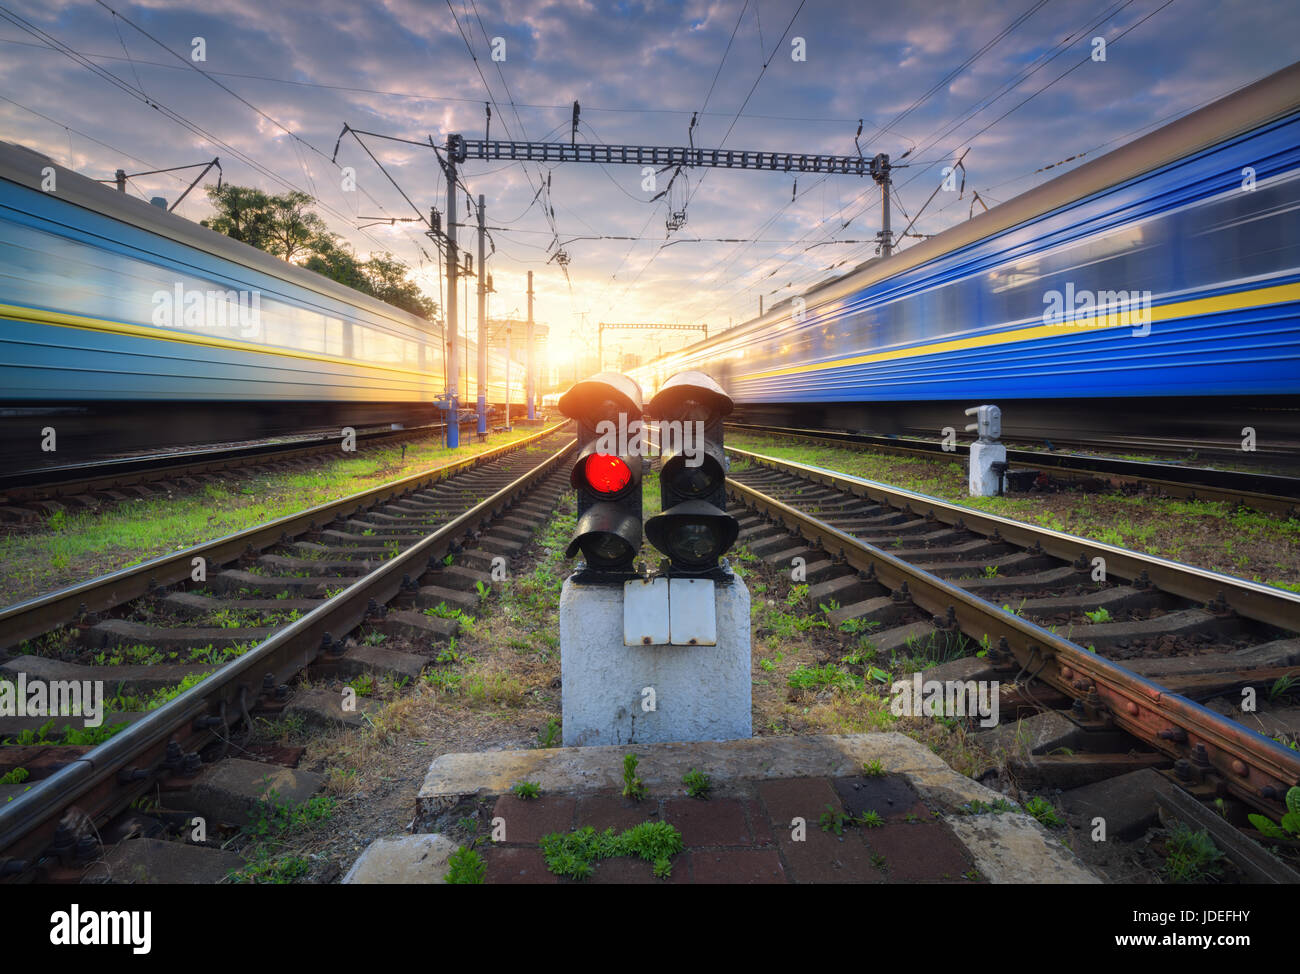 Les trains de voyageurs à grande vitesse en mouvement sur la voie de chemin de fer au coucher du soleil. Avec la gare de train de banlieue moderne brouillée, feu de circulation ferroviaire, bleu clo Banque D'Images